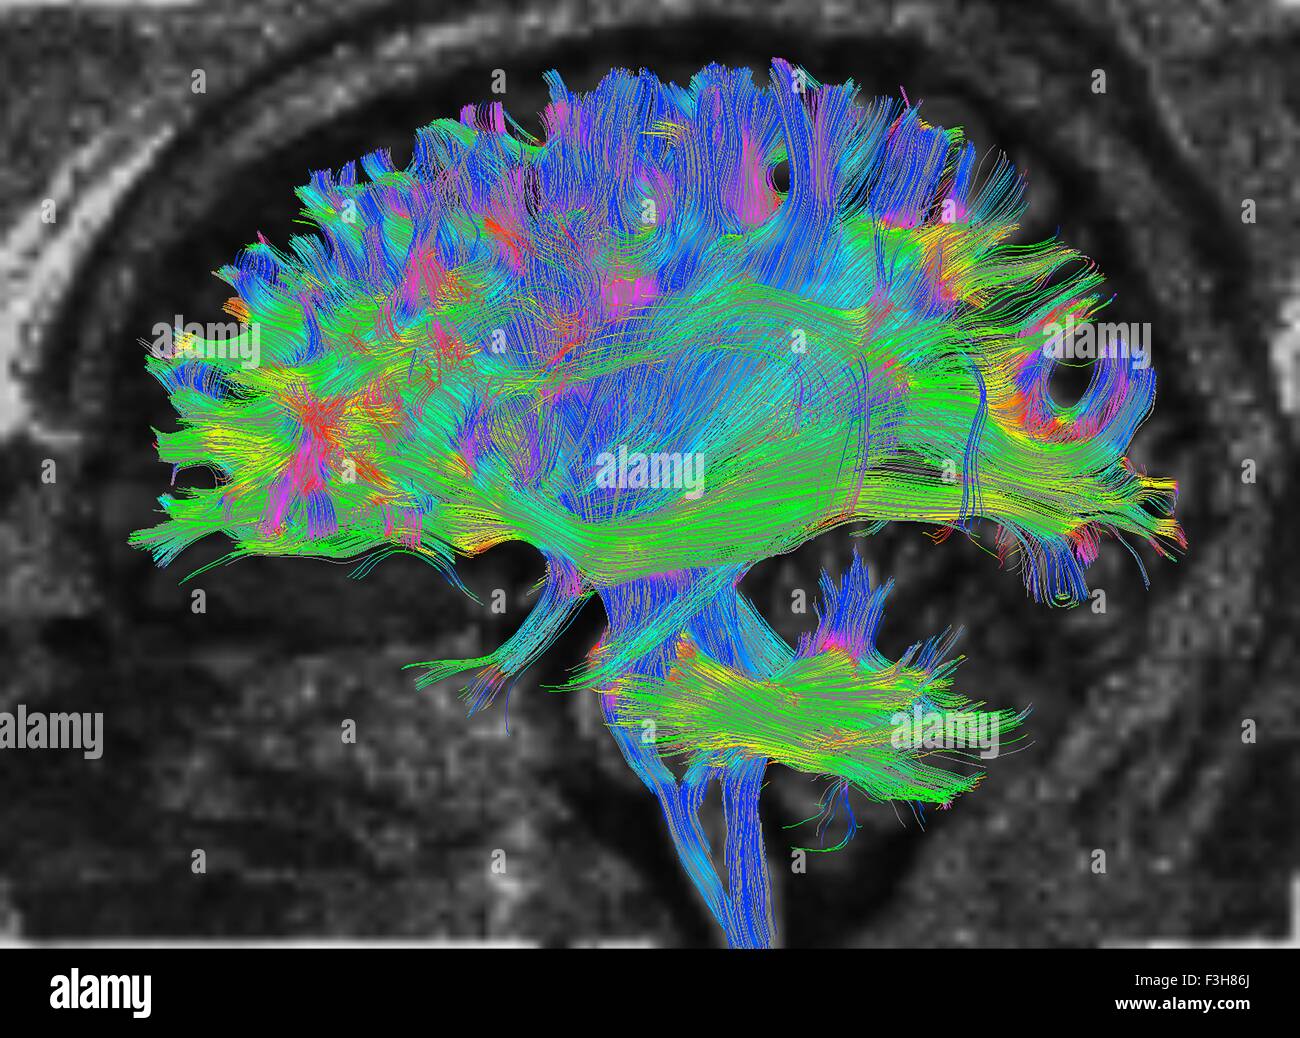 L'IRM de diffusion, également appelé l'imagerie du tenseur de diffusion ou DTI, du cerveau humain Banque D'Images